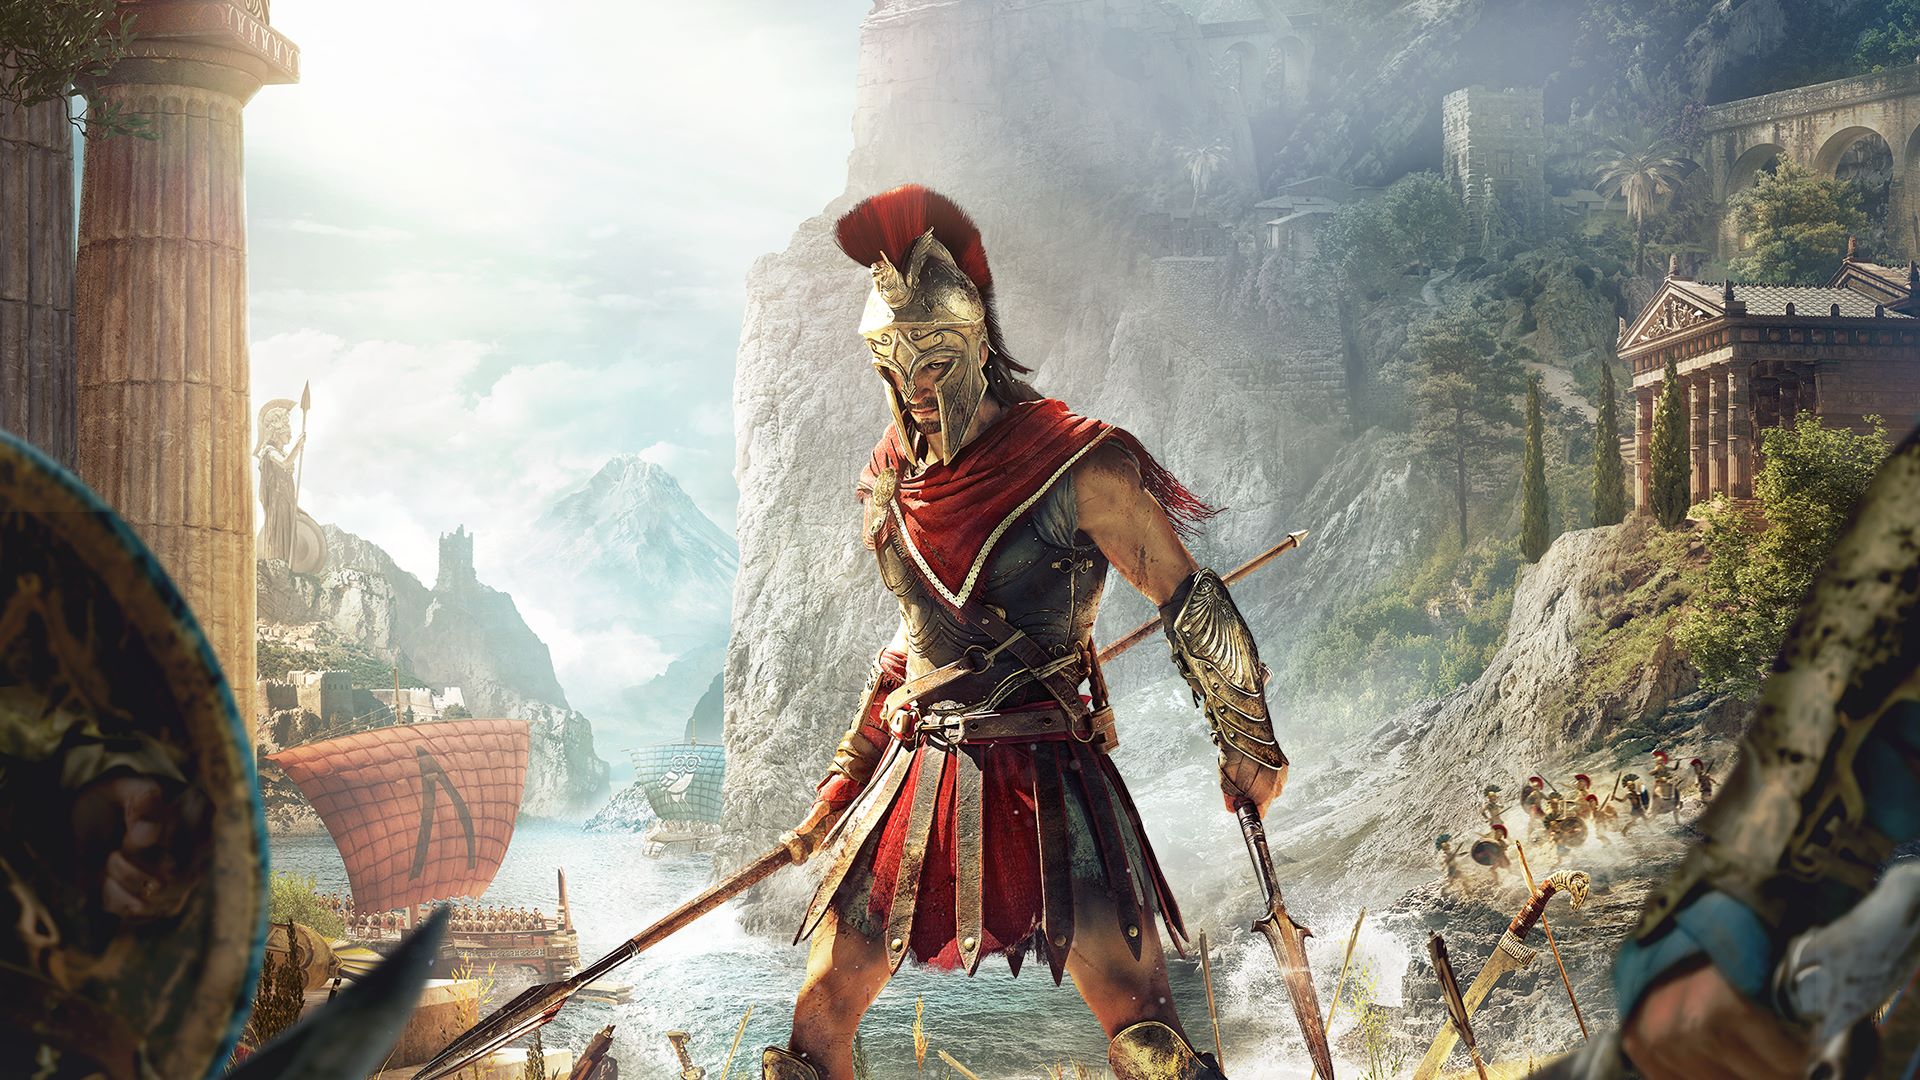  Assassin’s Creed: Odyssey ultima detalles para su lanzamiento